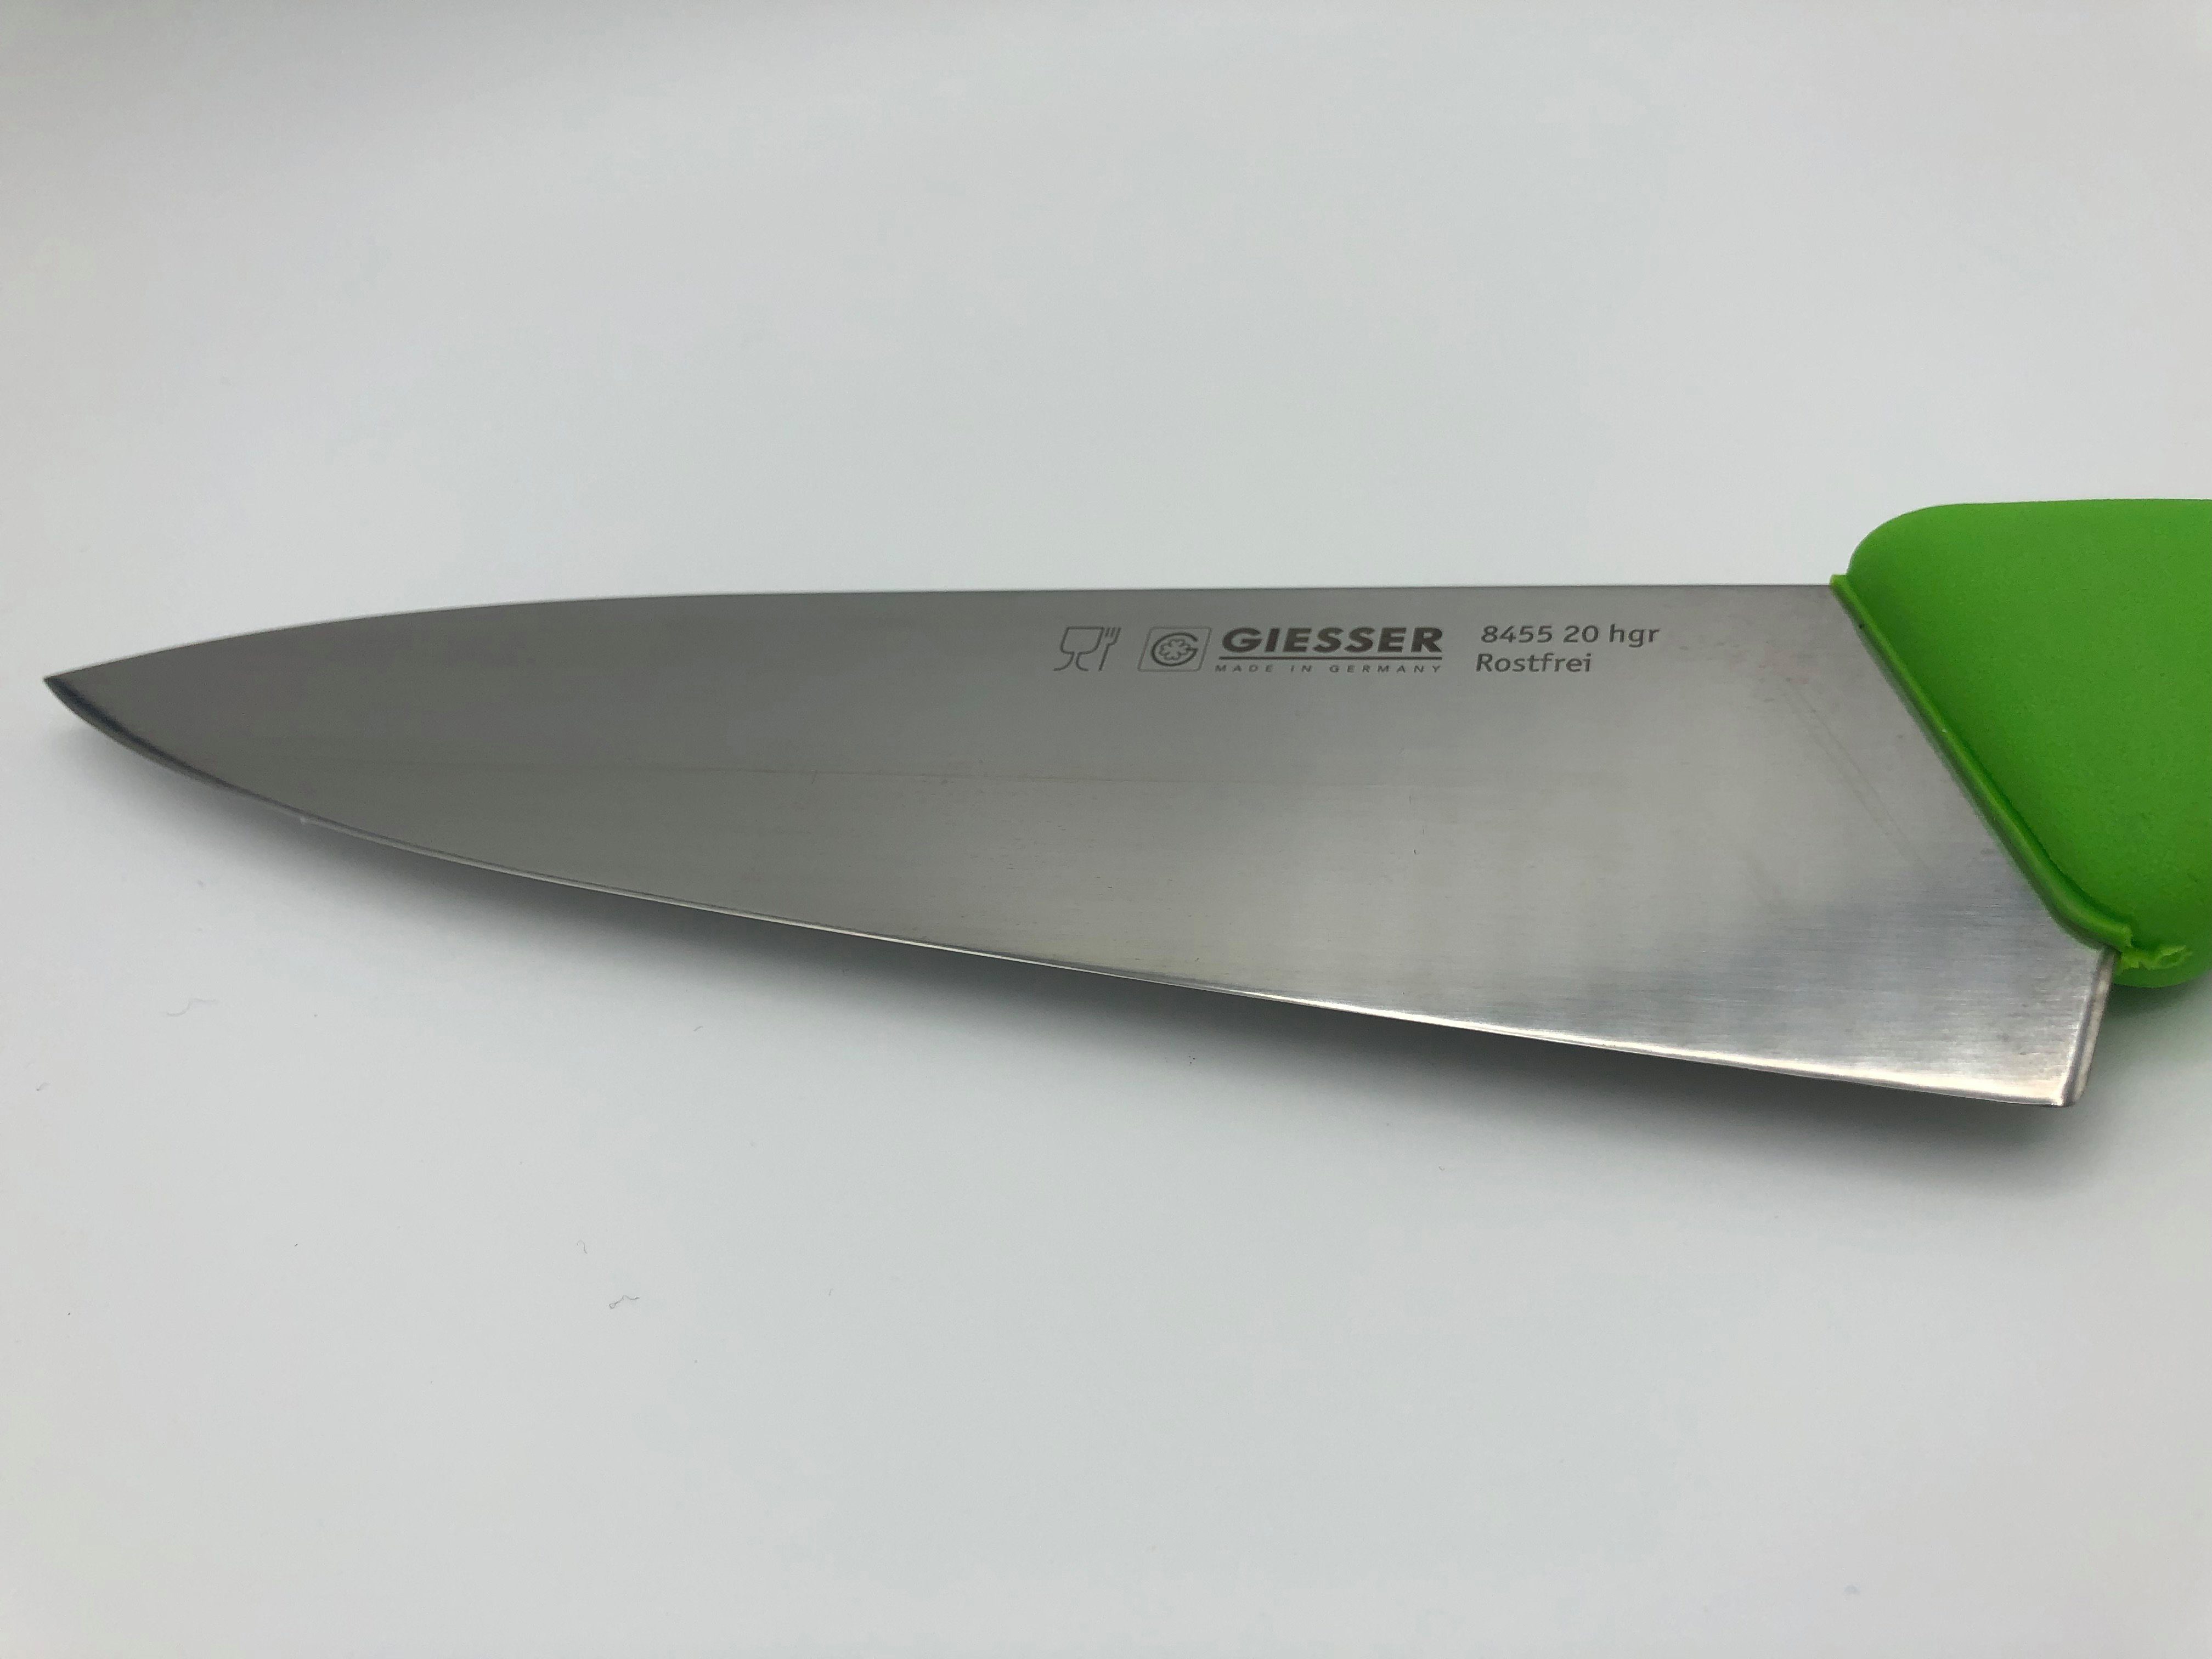 Messer scharf, 8455, Ideal Handabzug, Küchenmesser Kochmesser für hellgrün Küche breite breit Form, Rostfrei, jede Giesser